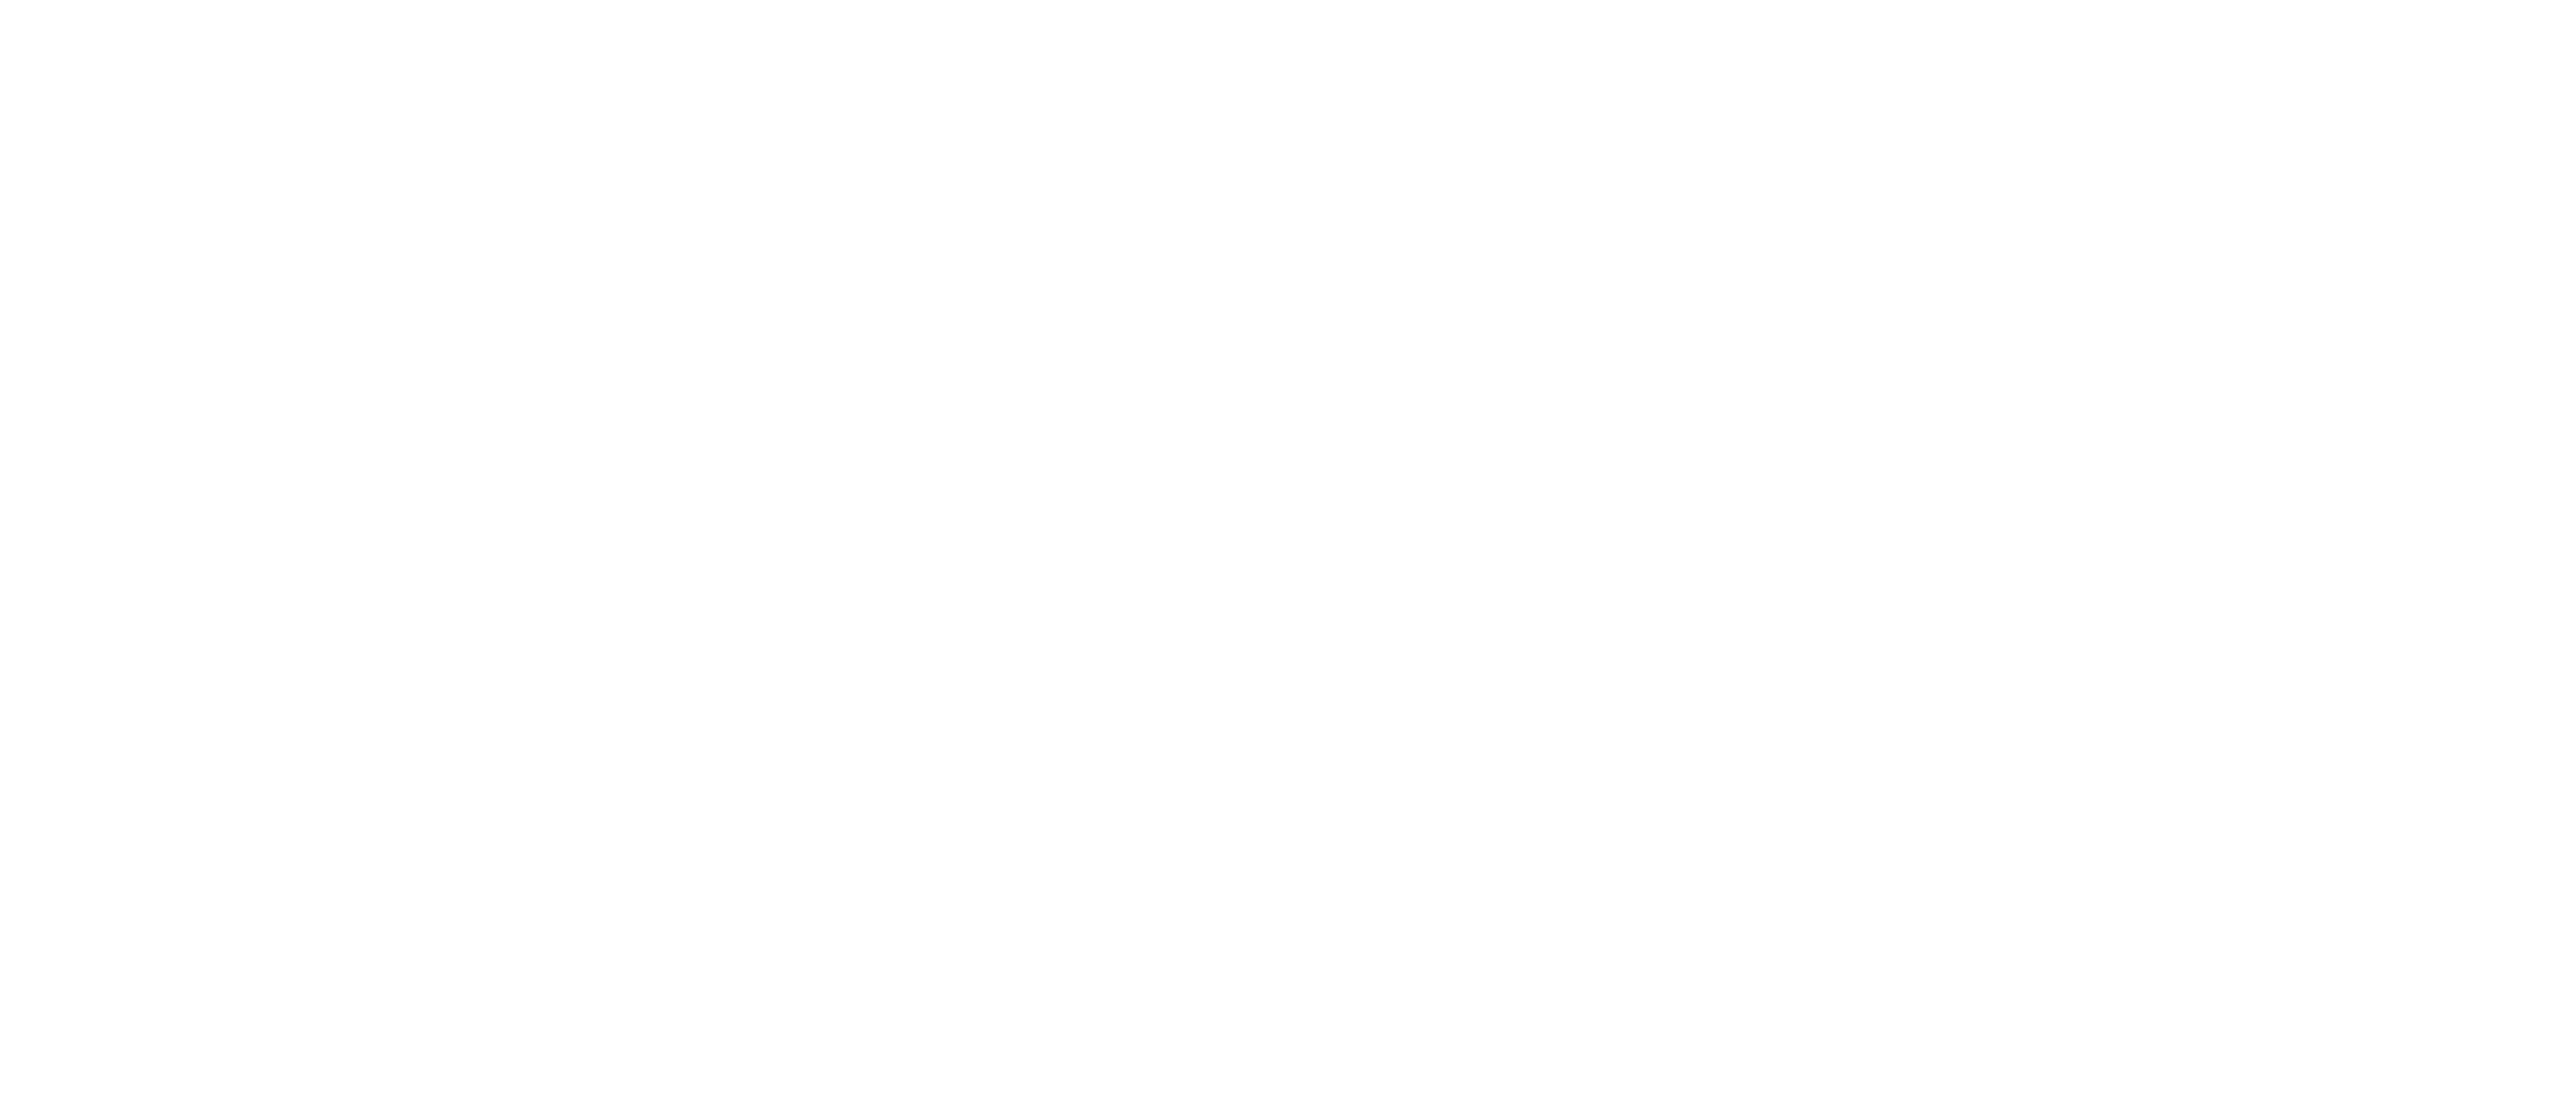 Never Goin' Back logo